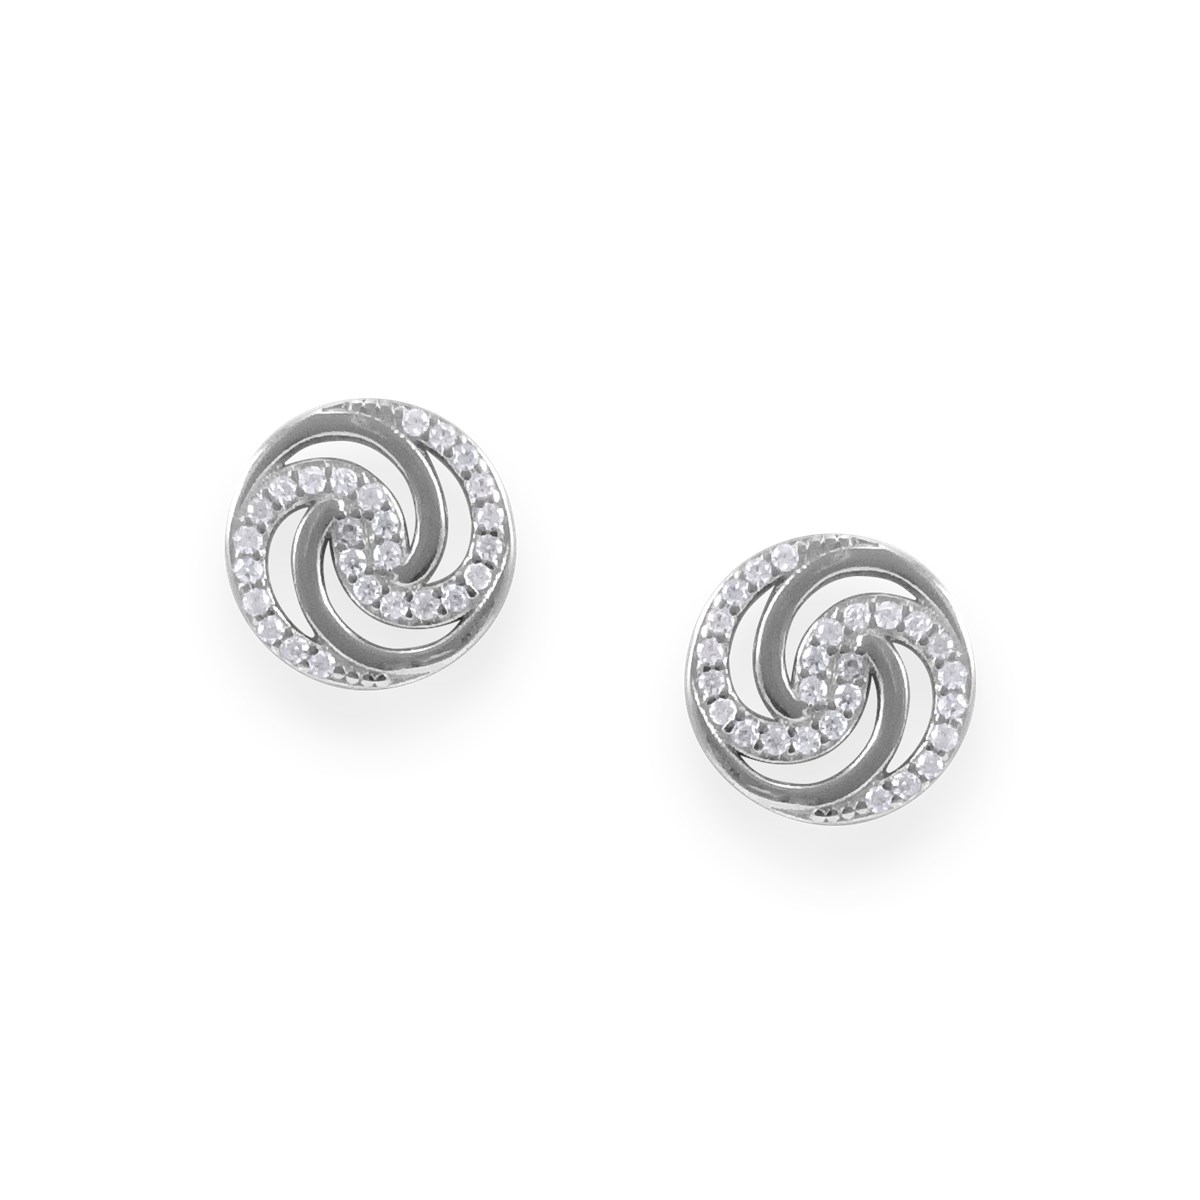 Boucles d'oreilles en argent 925 rhodié avec oxydes de zirconium